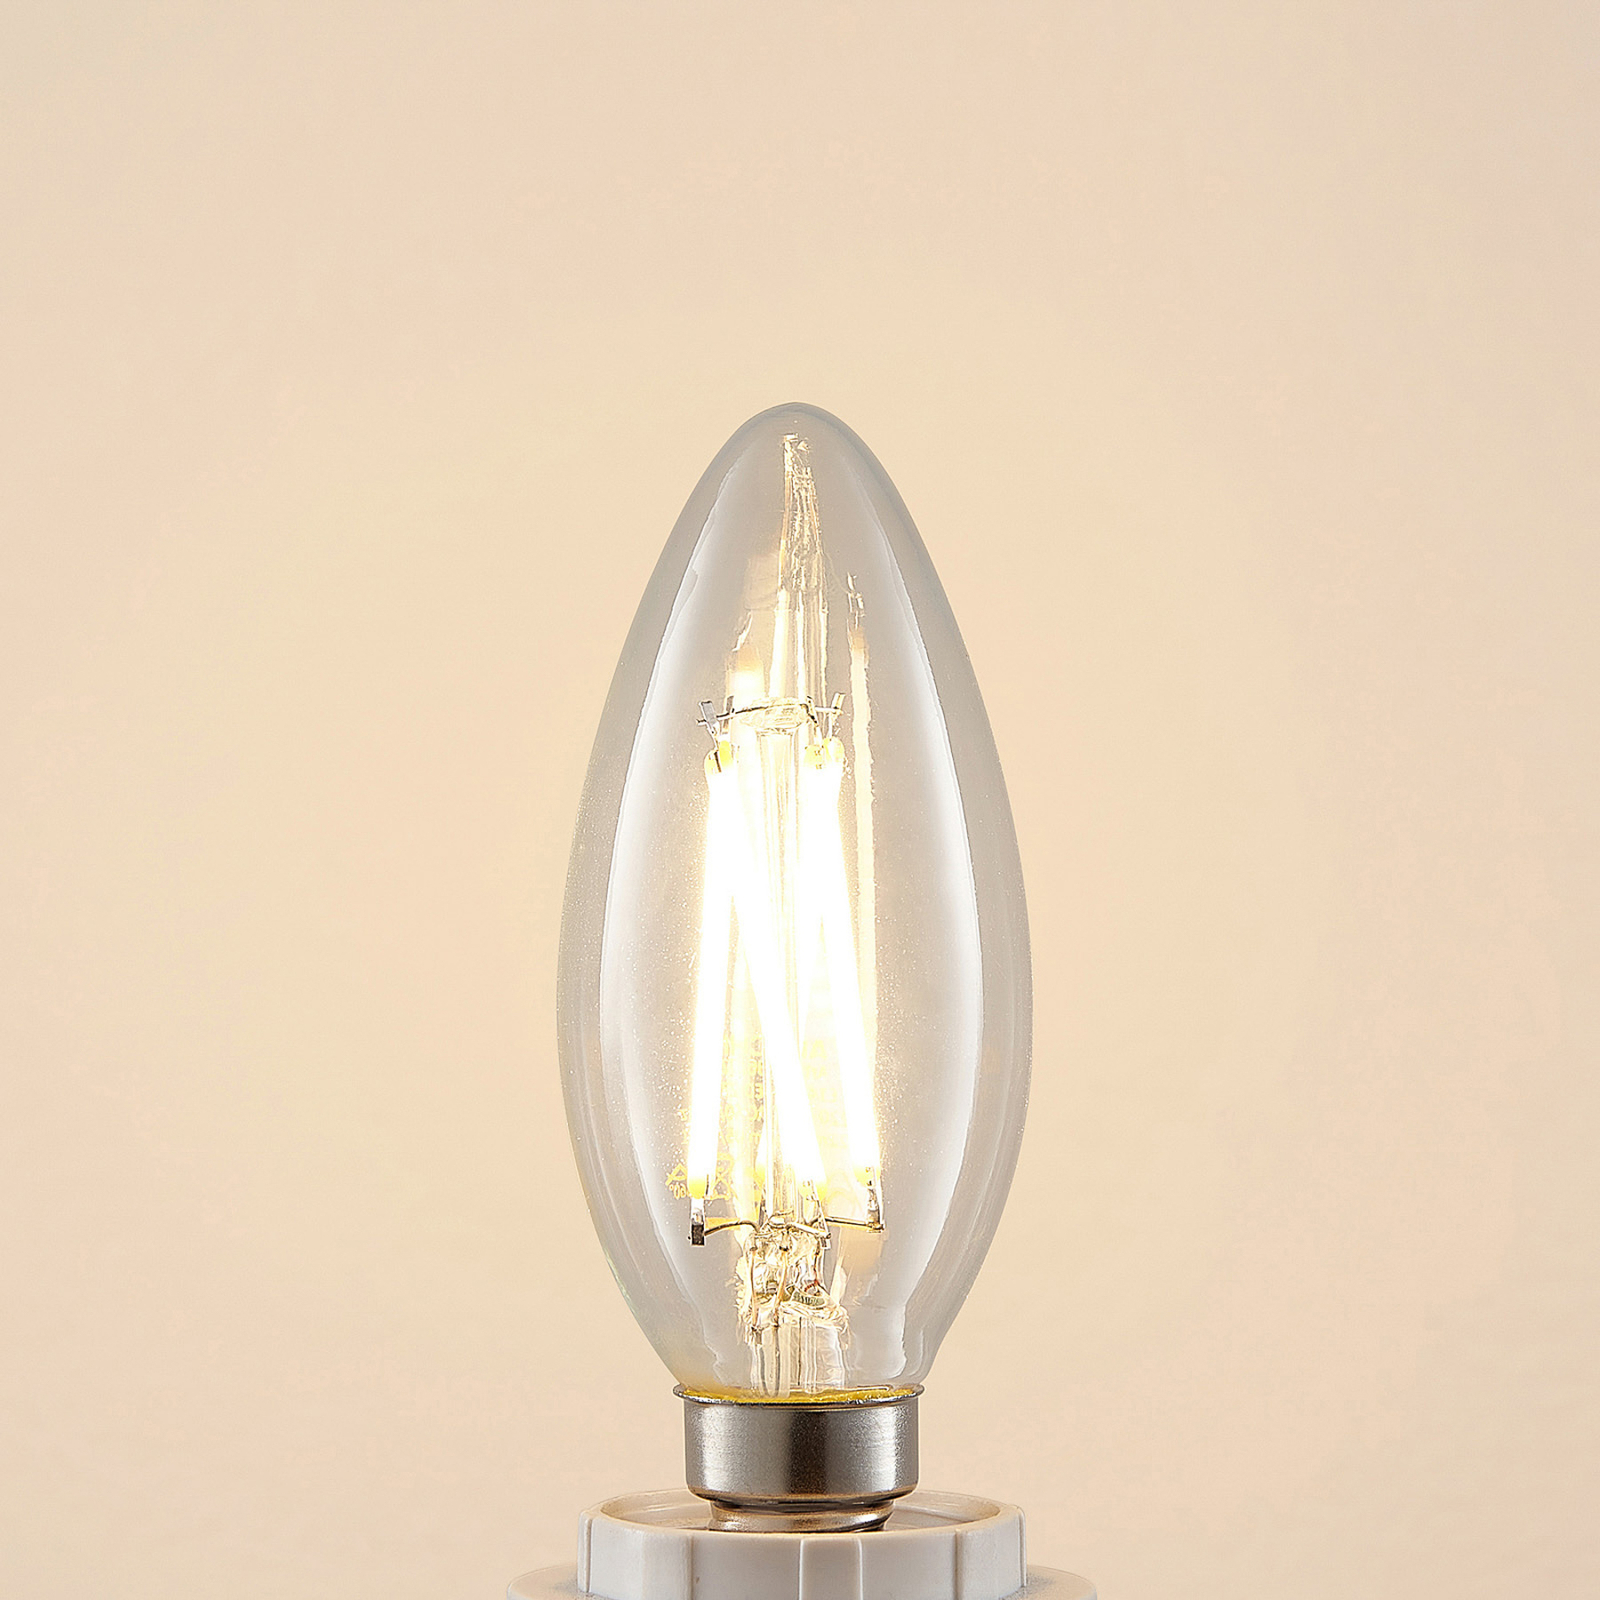 LED žiarovka E14 4W 827 sviečka stmievateľná 3 ks